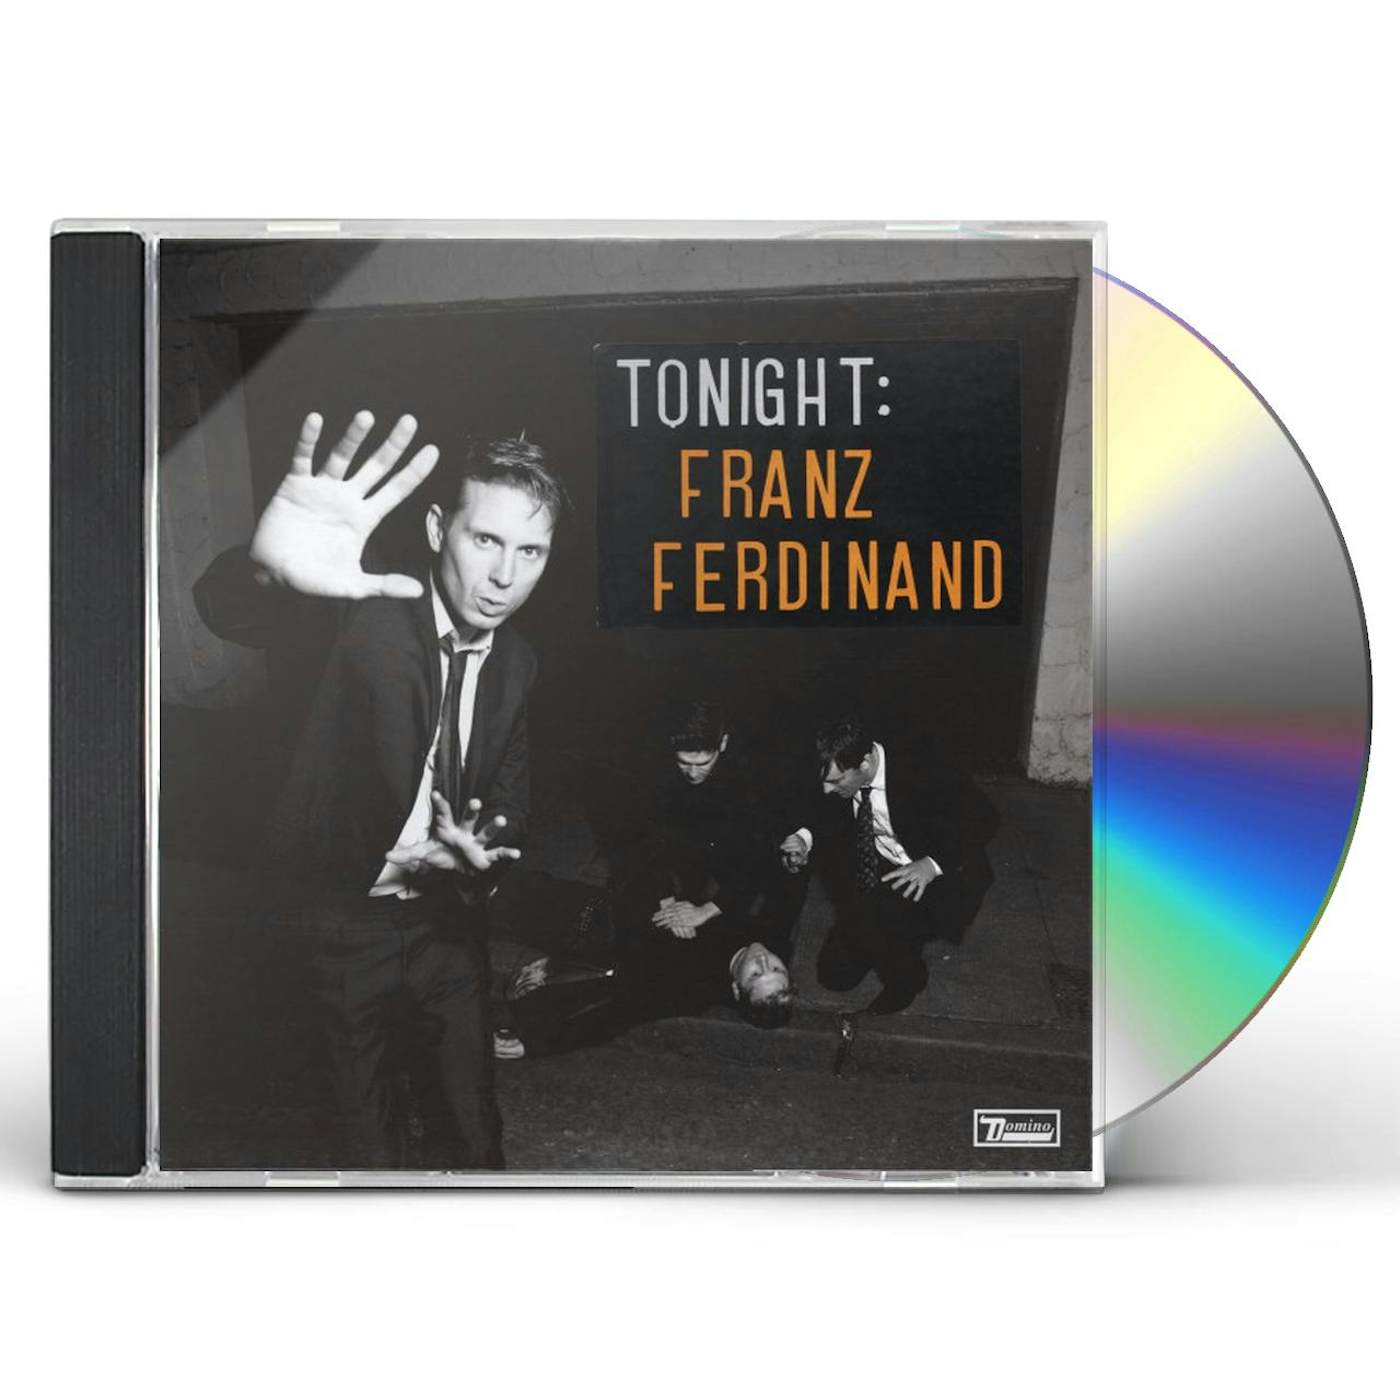 TONIGHT: FRANZ FERDINAND CD